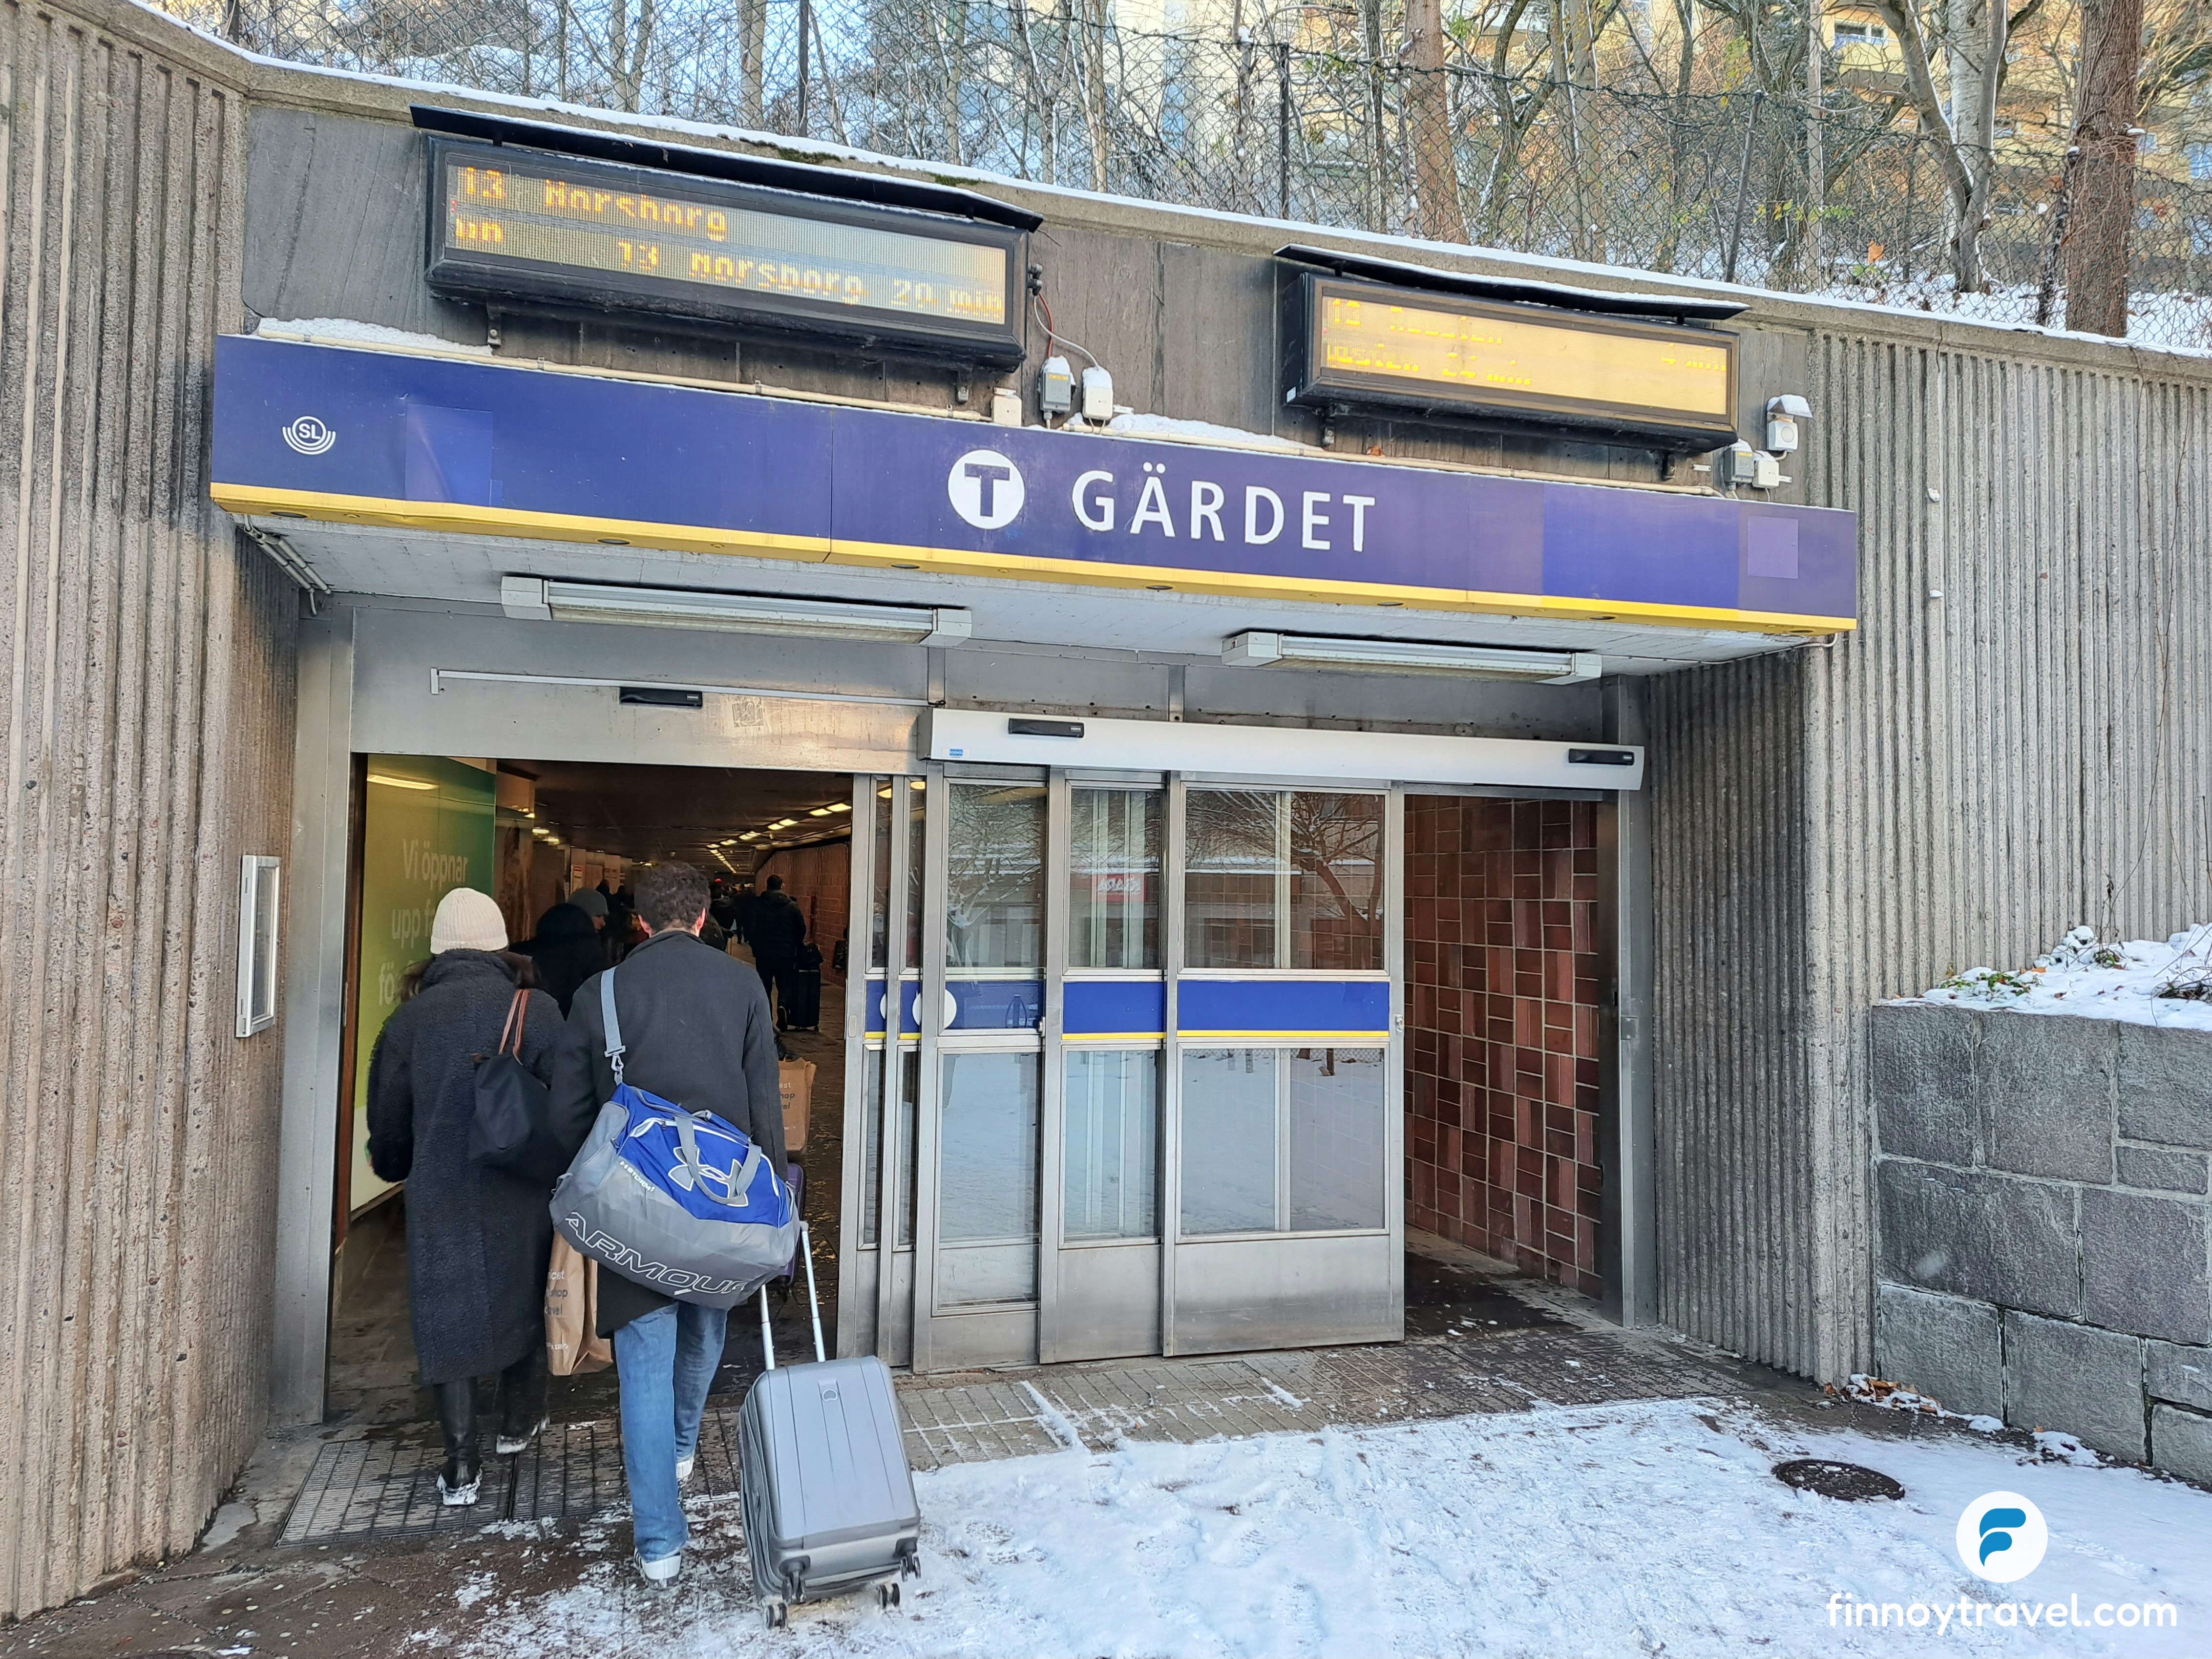 Gardet_T_station_Stockholm.jpg